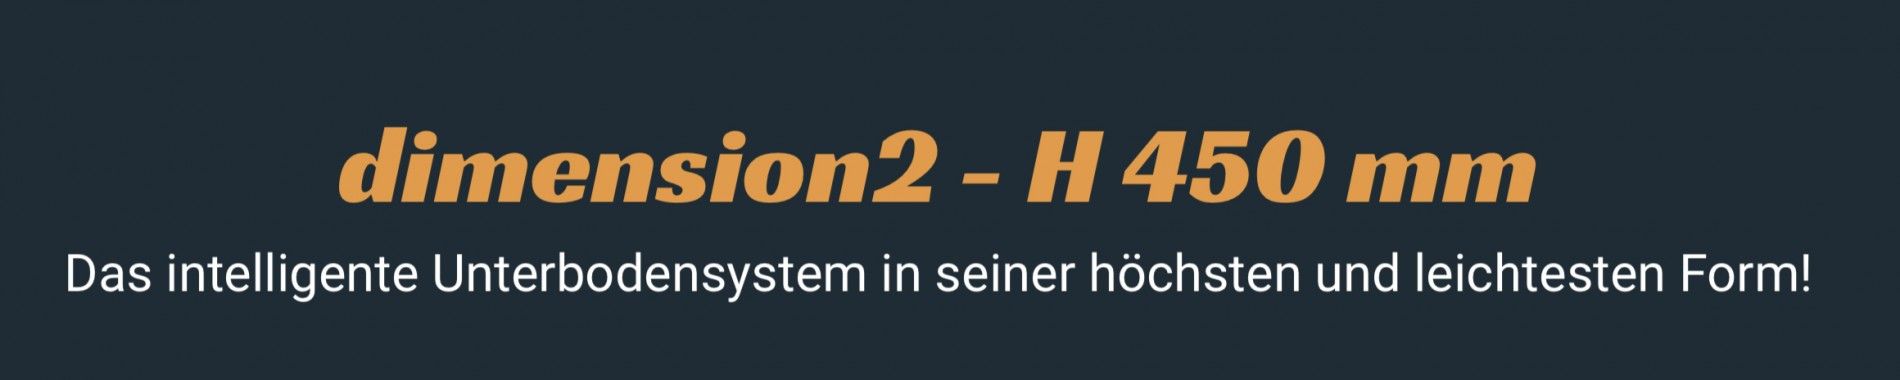 Heyermann Fahrzeugeinrichtungen - Dimension 2 Unterflurschubladen - Heyermann Witten